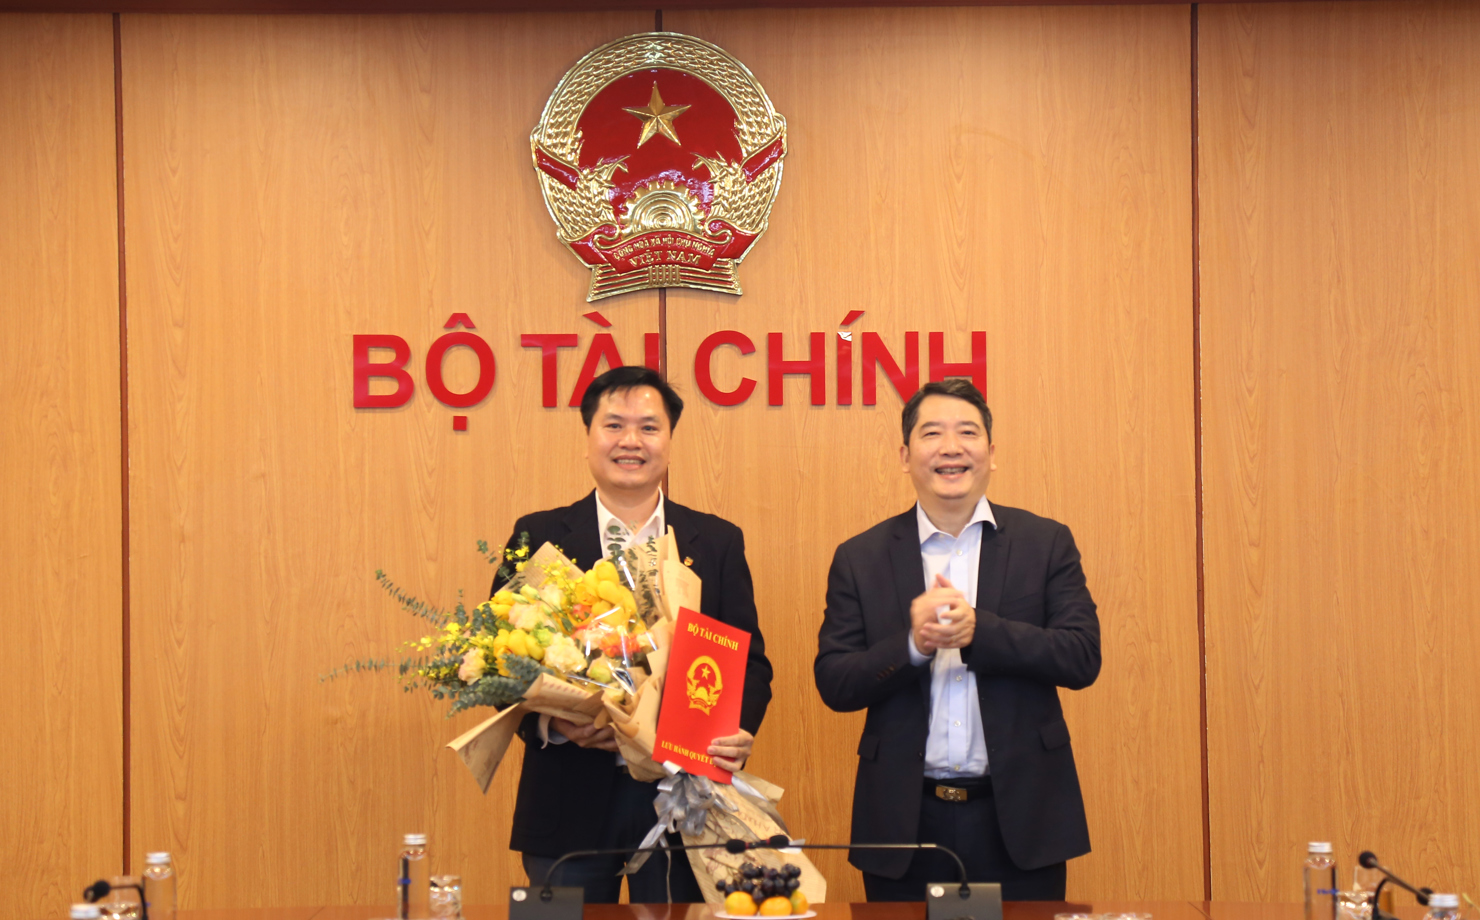 Ông Dương Bá Đức được bổ nhiệm giữ chức Vụ trưởng Vụ Đầu tư.